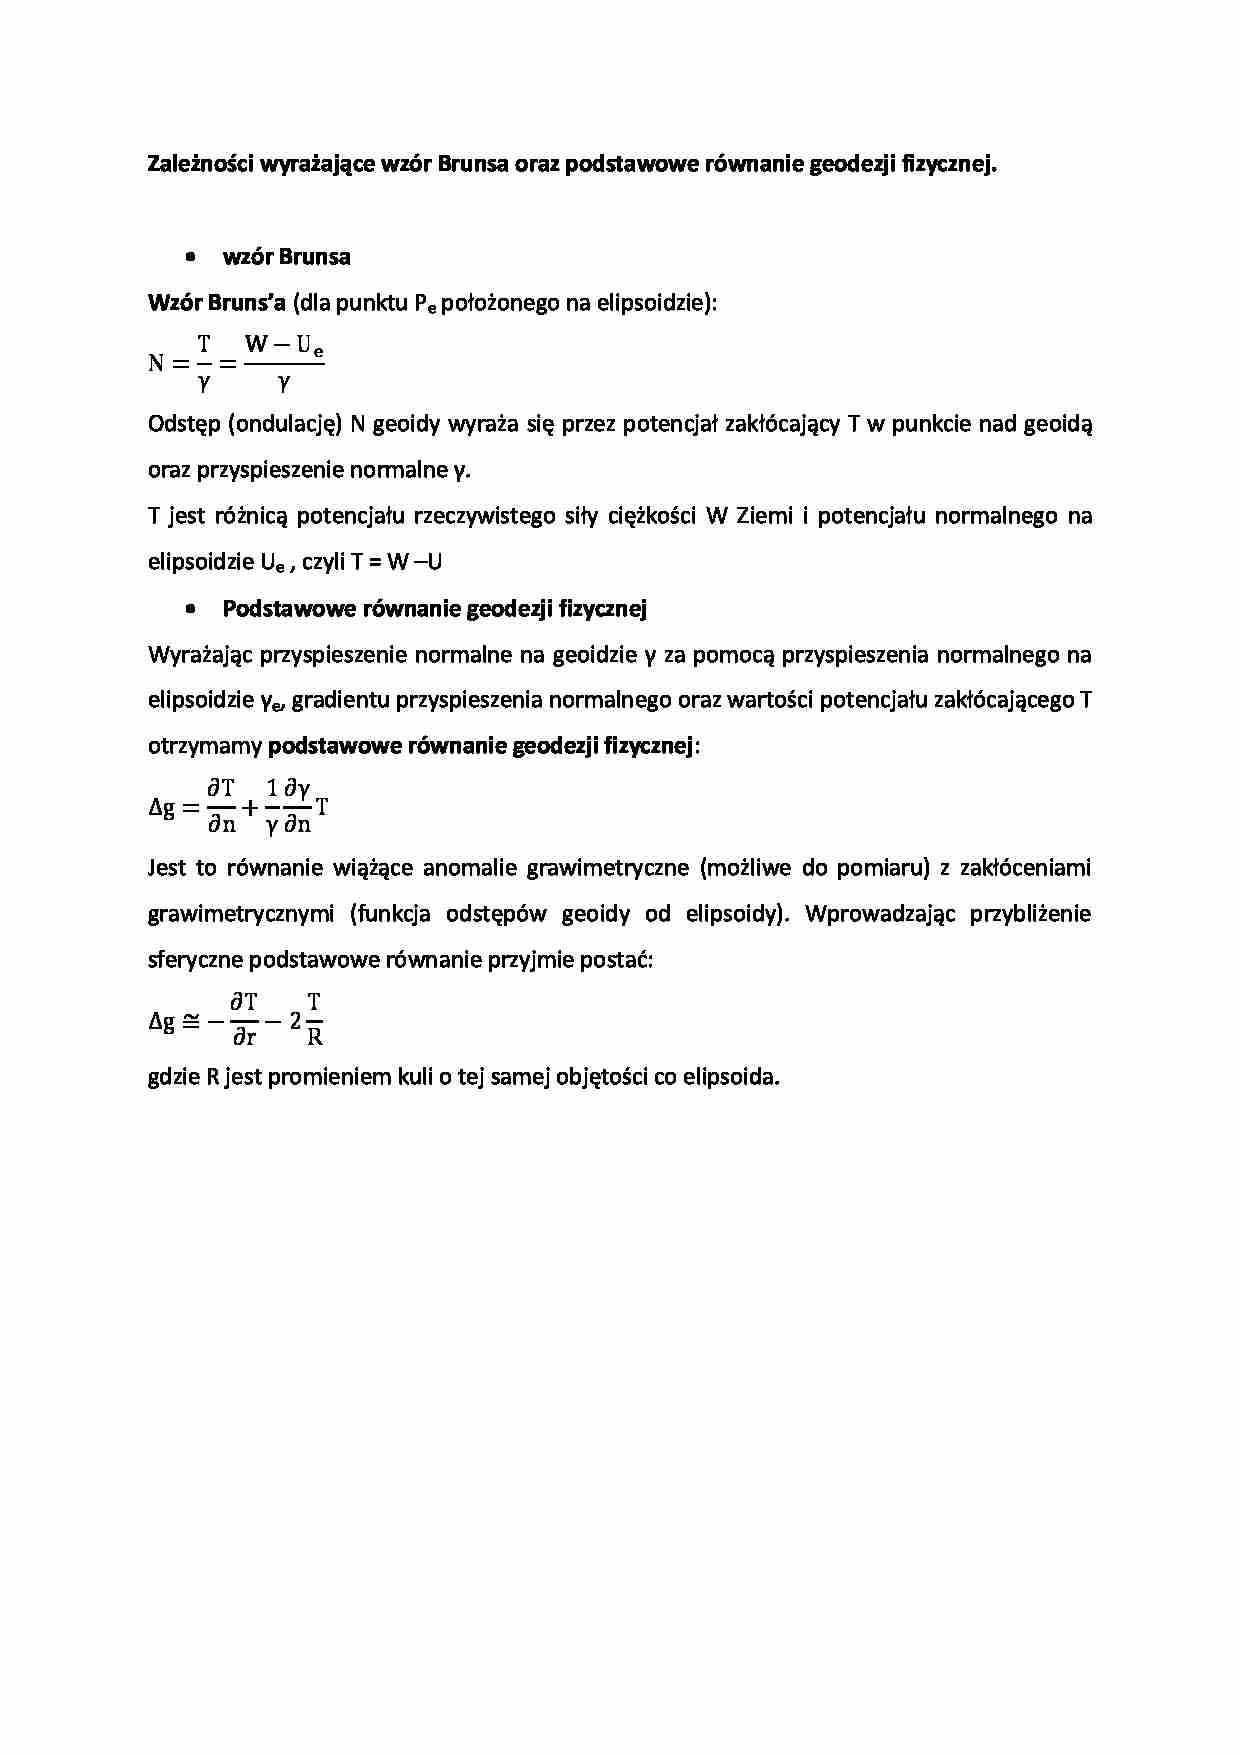 Zależności wyrażające wzór Brunsa oraz podstawowe równanie geodezji fizycznej - strona 1